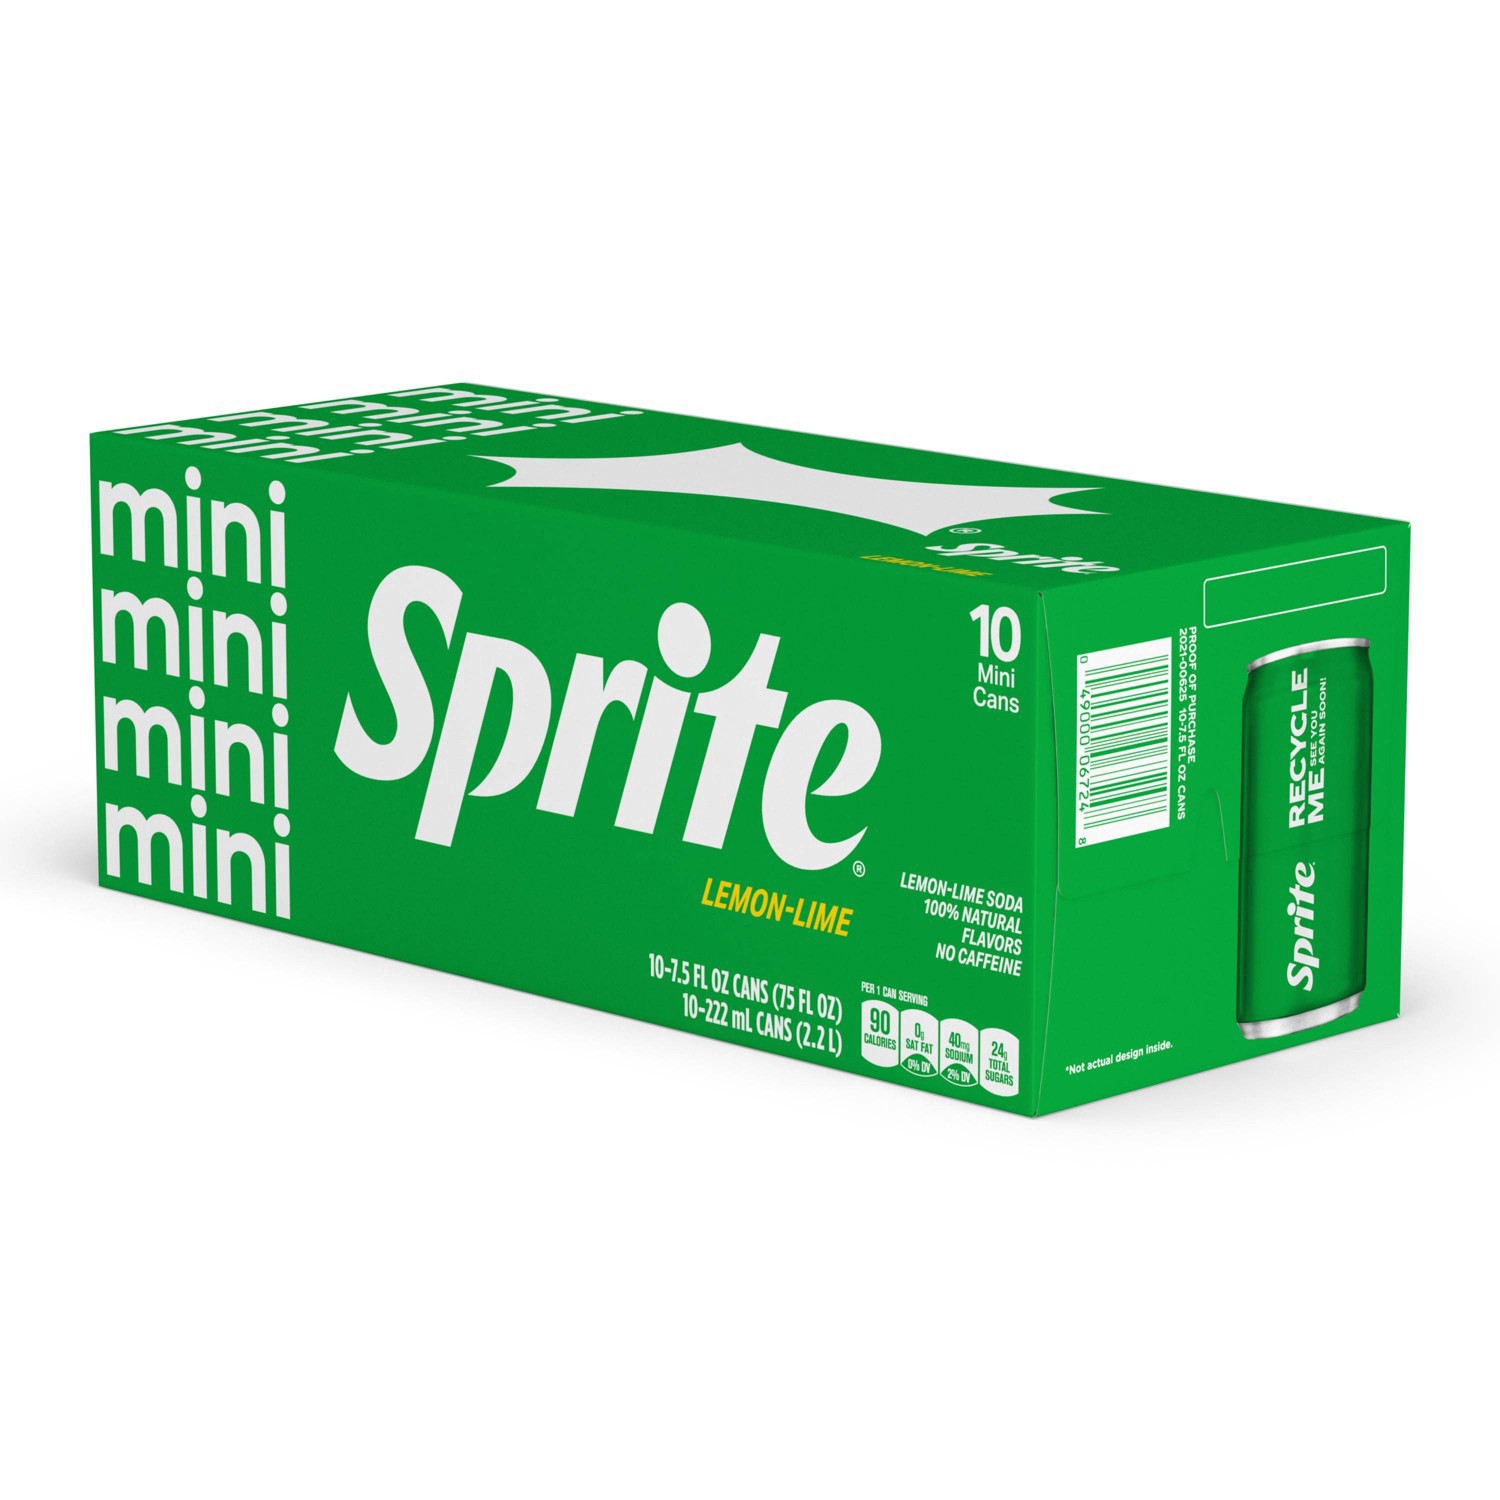 slide 17 of 91, Sprite Lemon Lime Soda Soft Drinks, 7.5 fl oz, 10 Pack, 